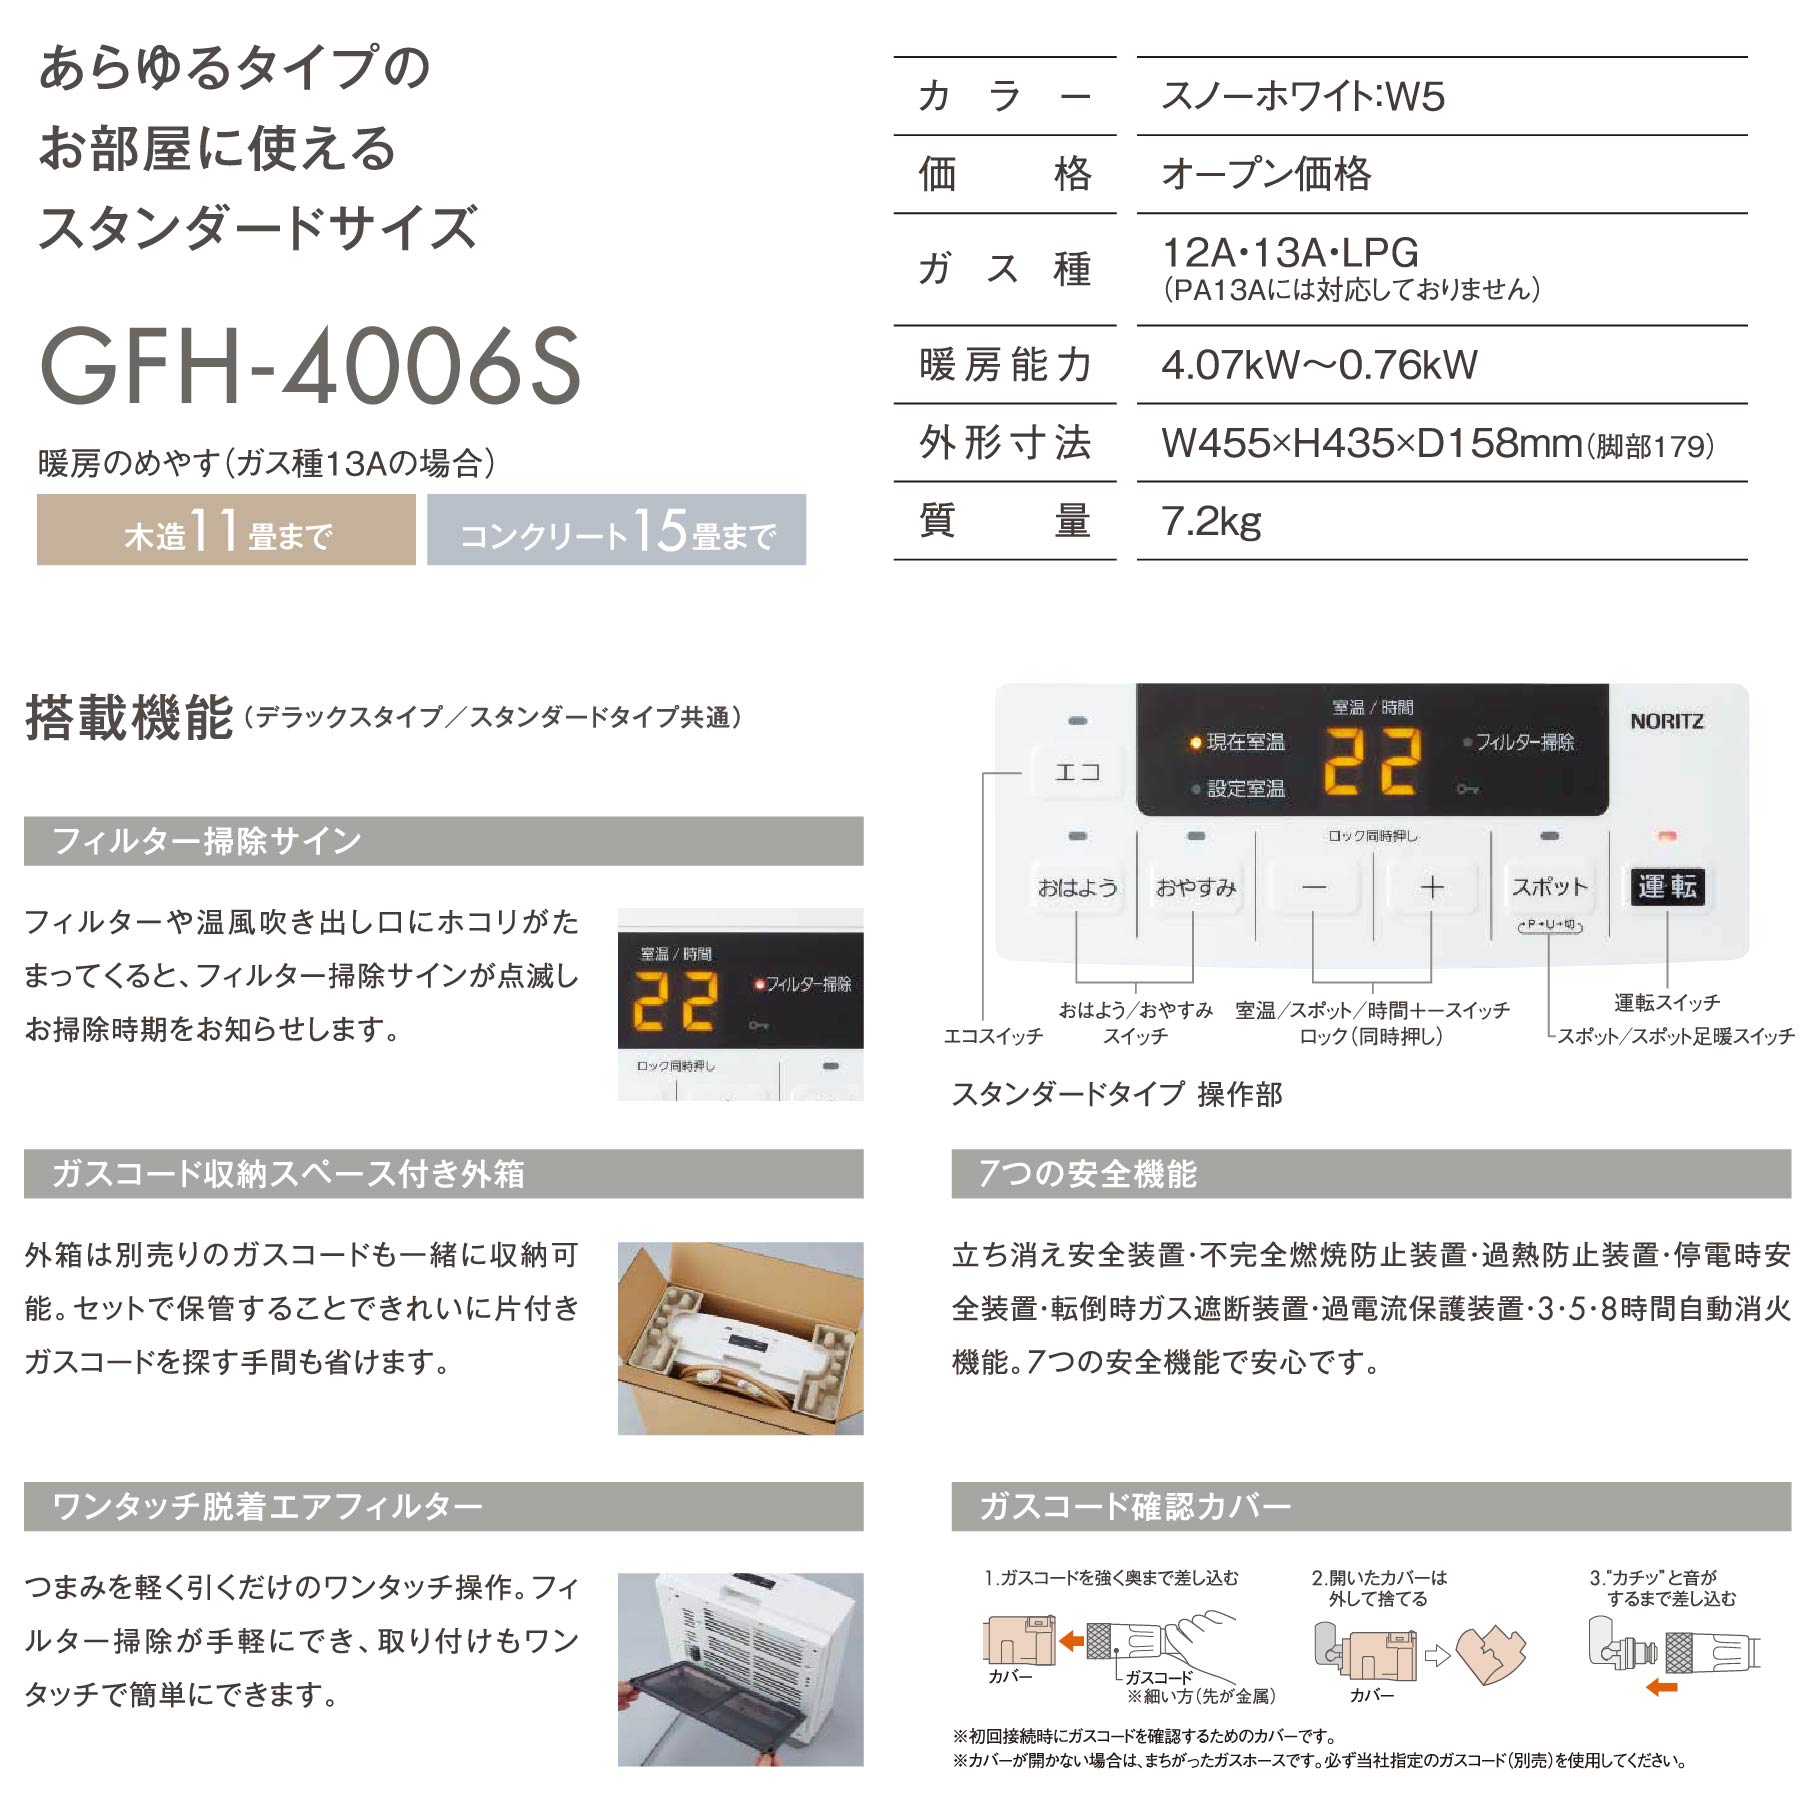 冷暖房/空調 ファンヒーター 楽天市場】ノーリツ ガスファンヒーター GFH-4006S(W5) スタンダード 